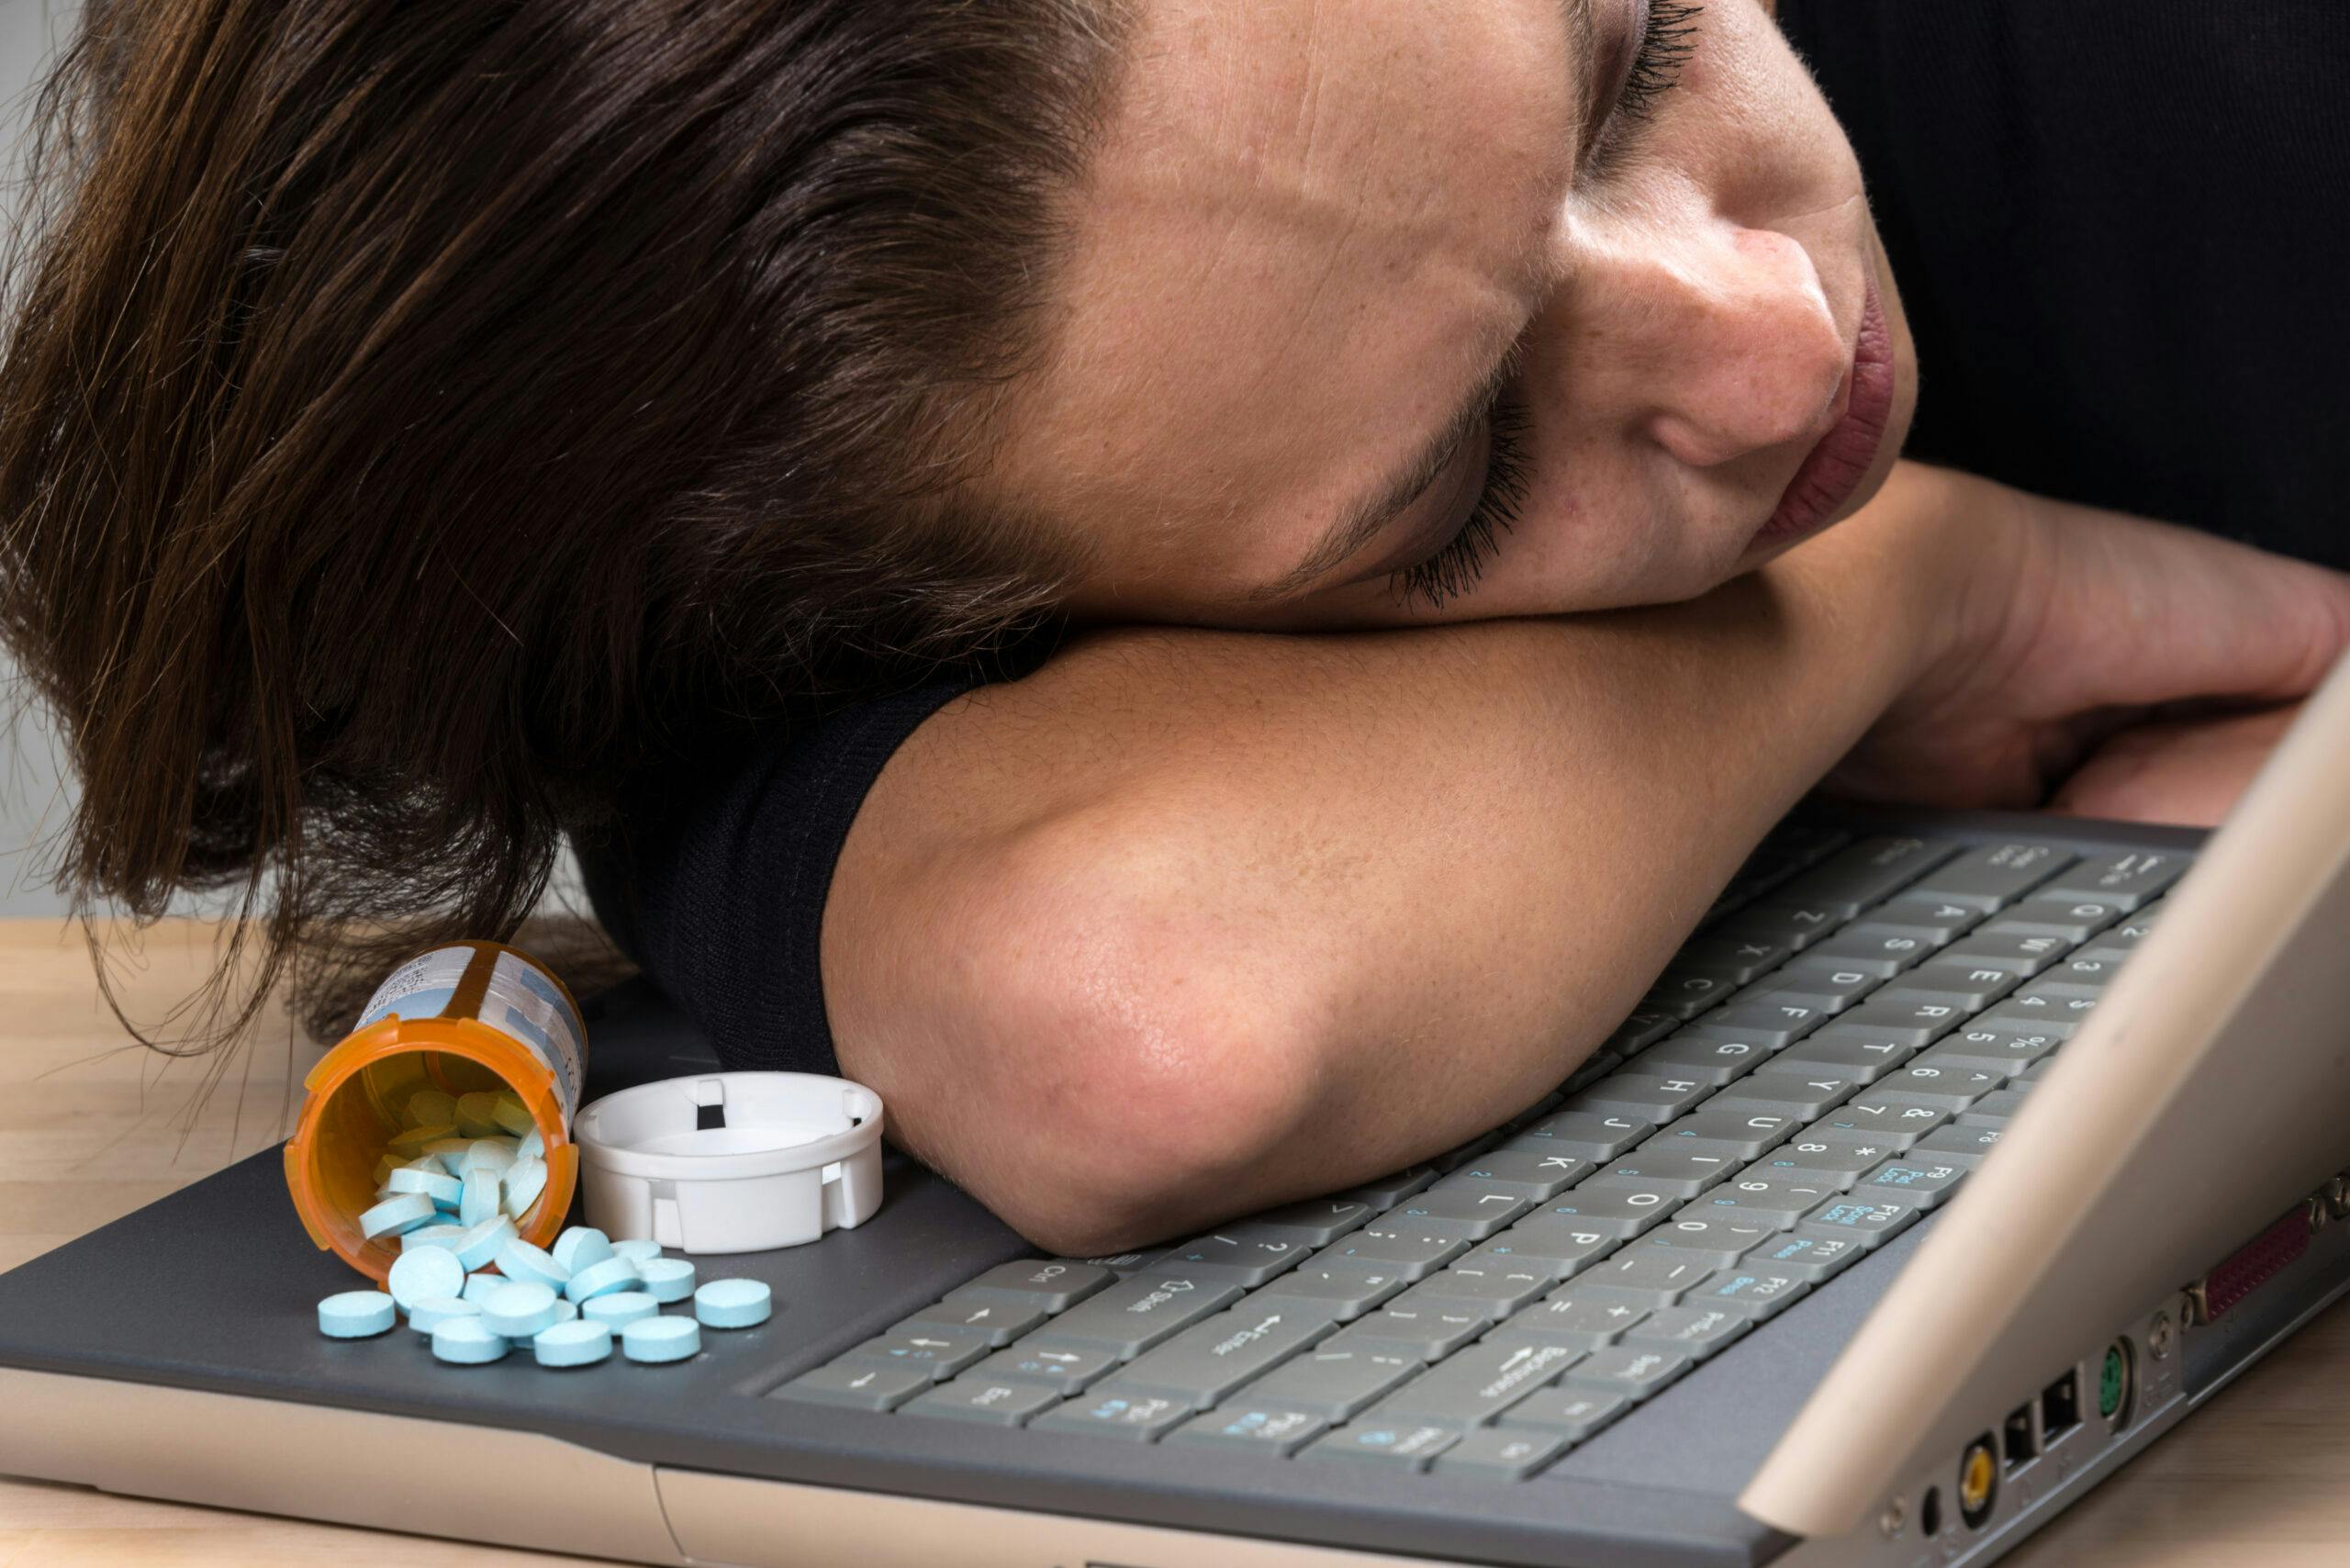 woman sleeping on laptop next to alprazolam pills spilled